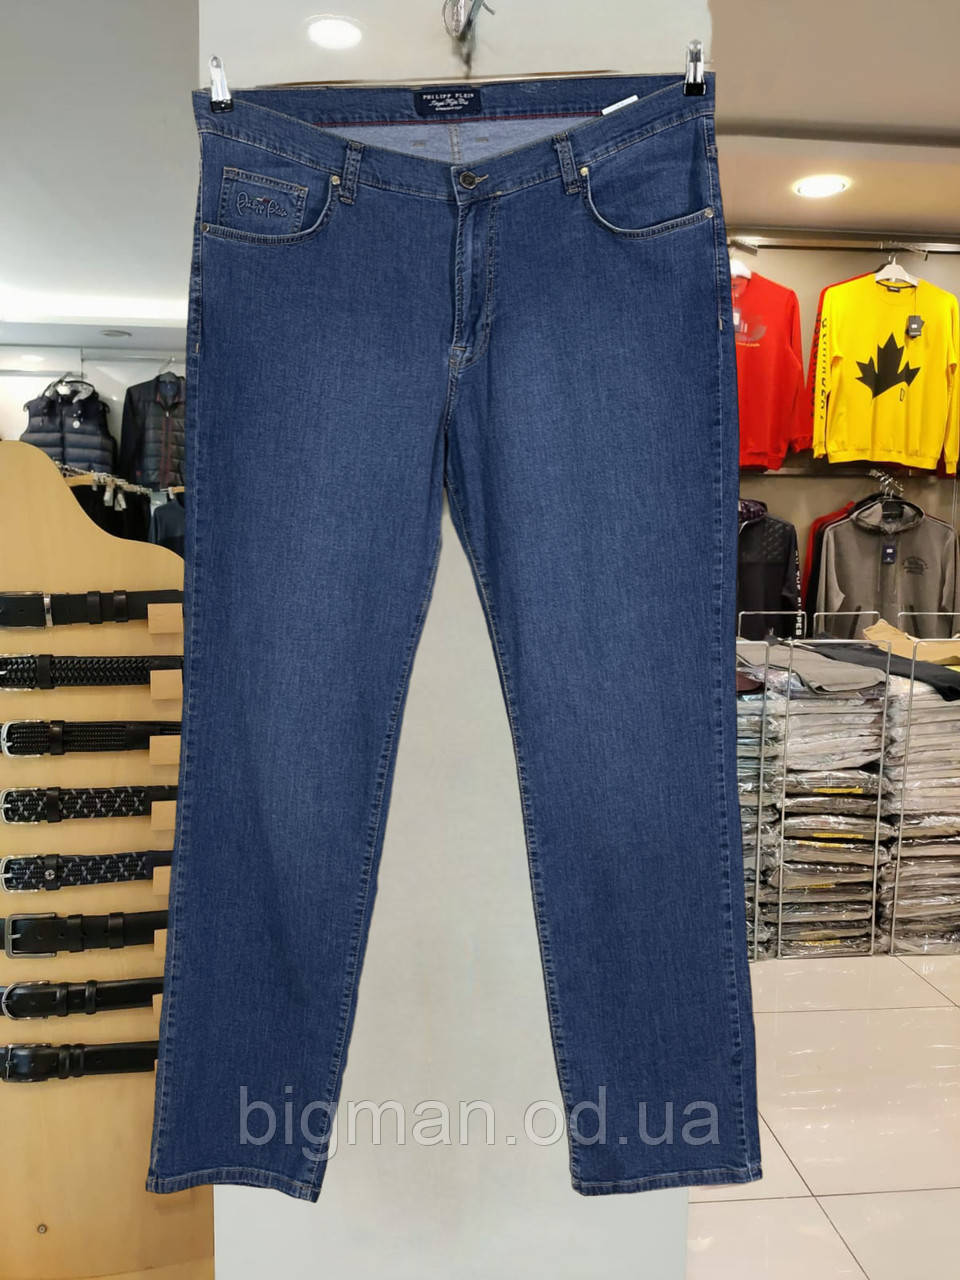 Чоловічі джинси на ремені Grand la Vita 44-50 розміру великого батального розміру Туреччина